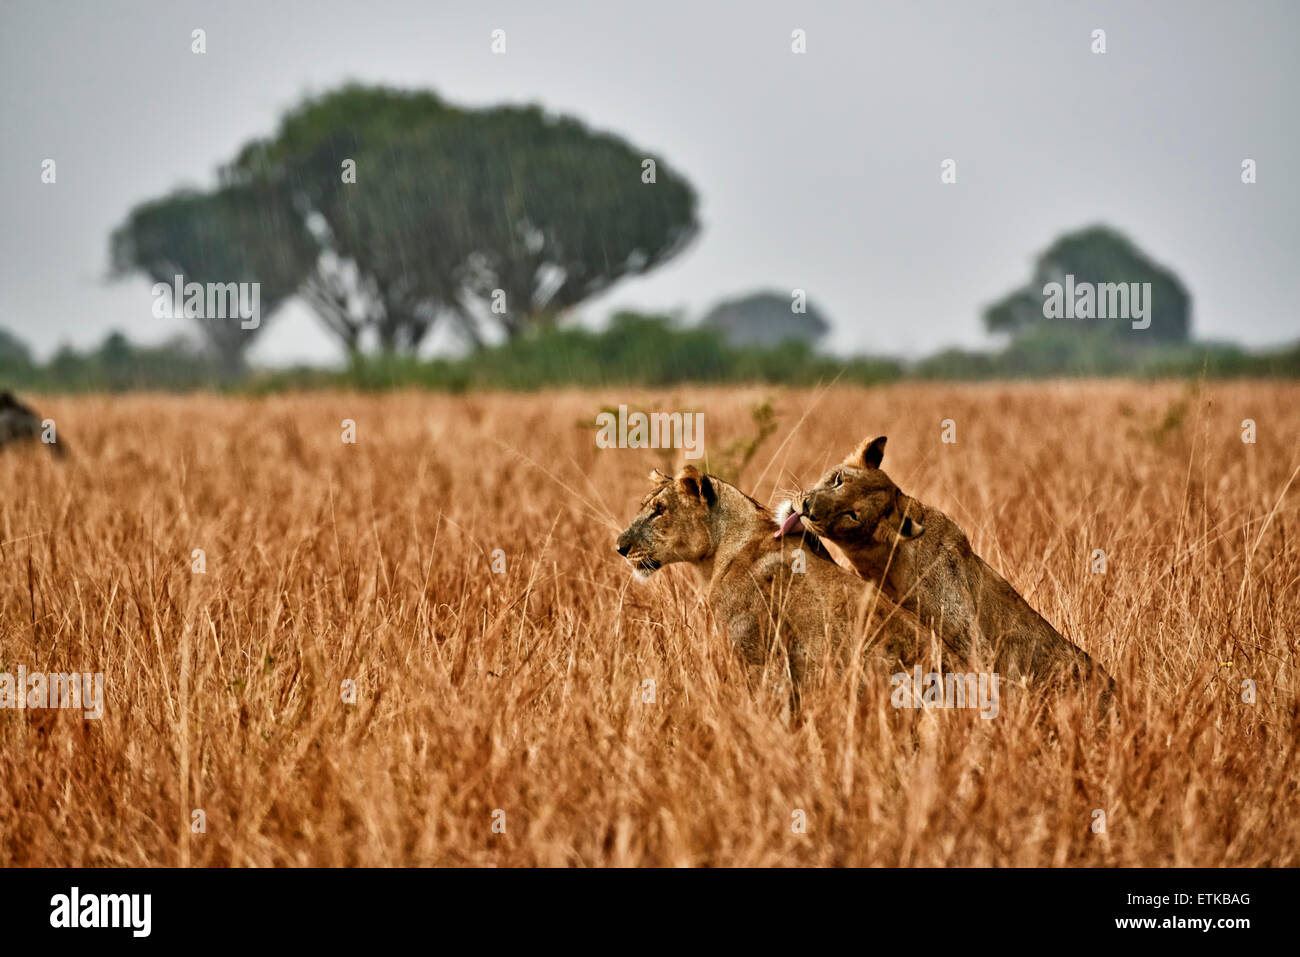 Due leonessa, leccare, nella prateria durante la pioggia, Panthera leo, Queen Elizabeth National Park, Uganda, Africa Foto Stock